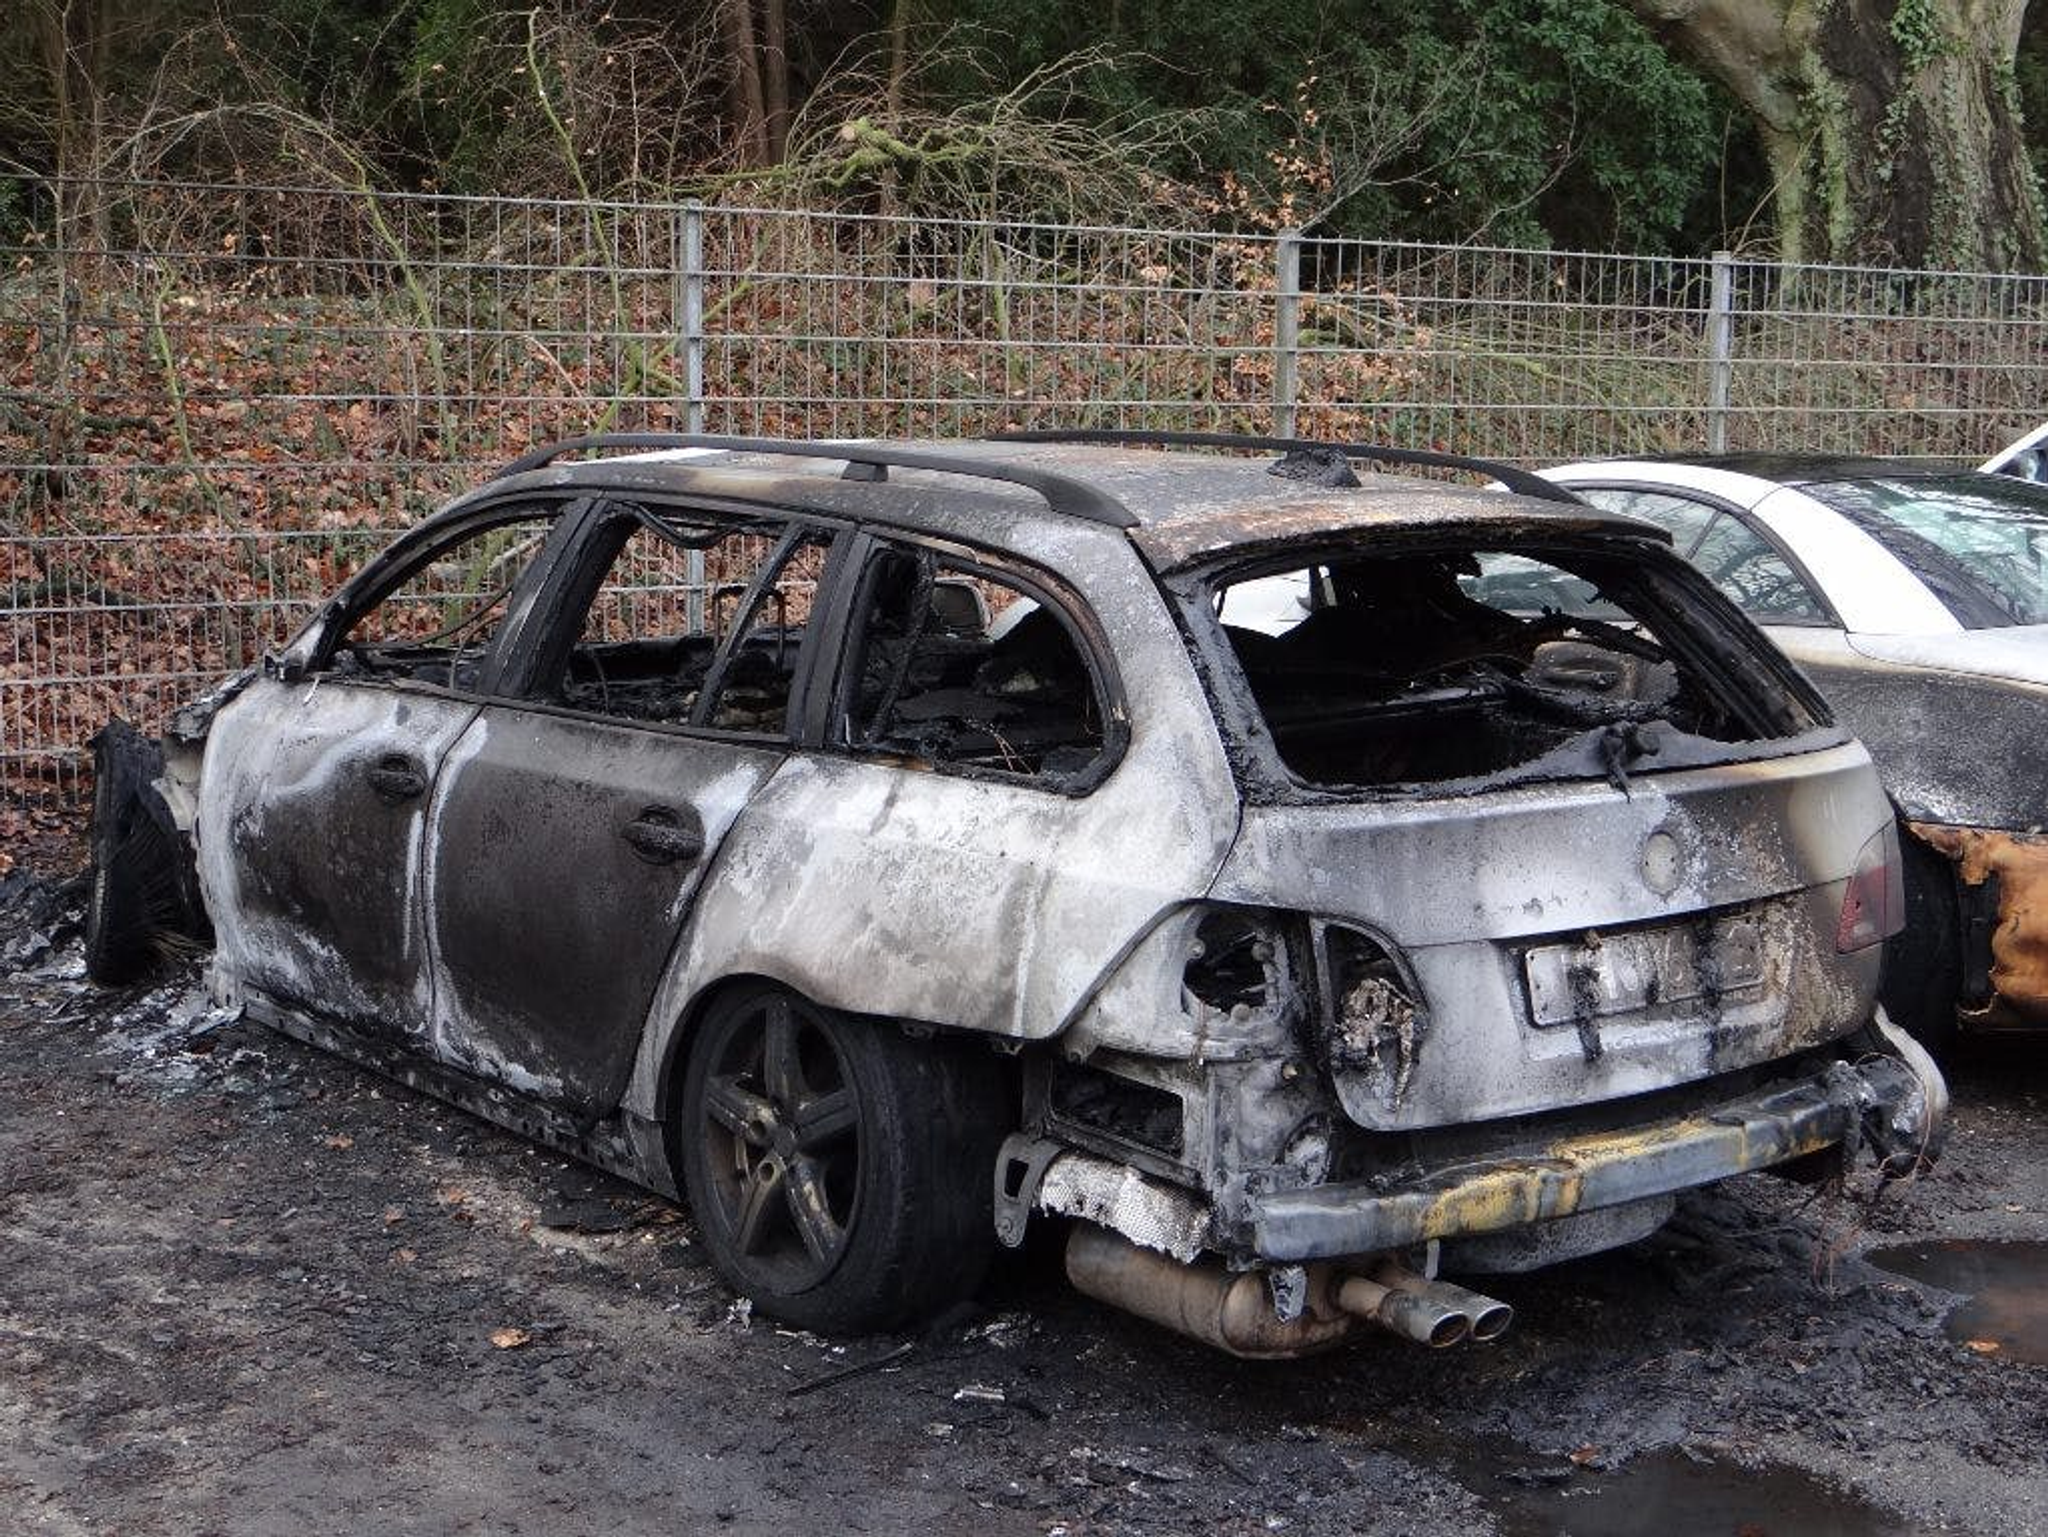 põlenud auto, kahjustatud auto, sõiduk pärast tulekahju, põlenud auto